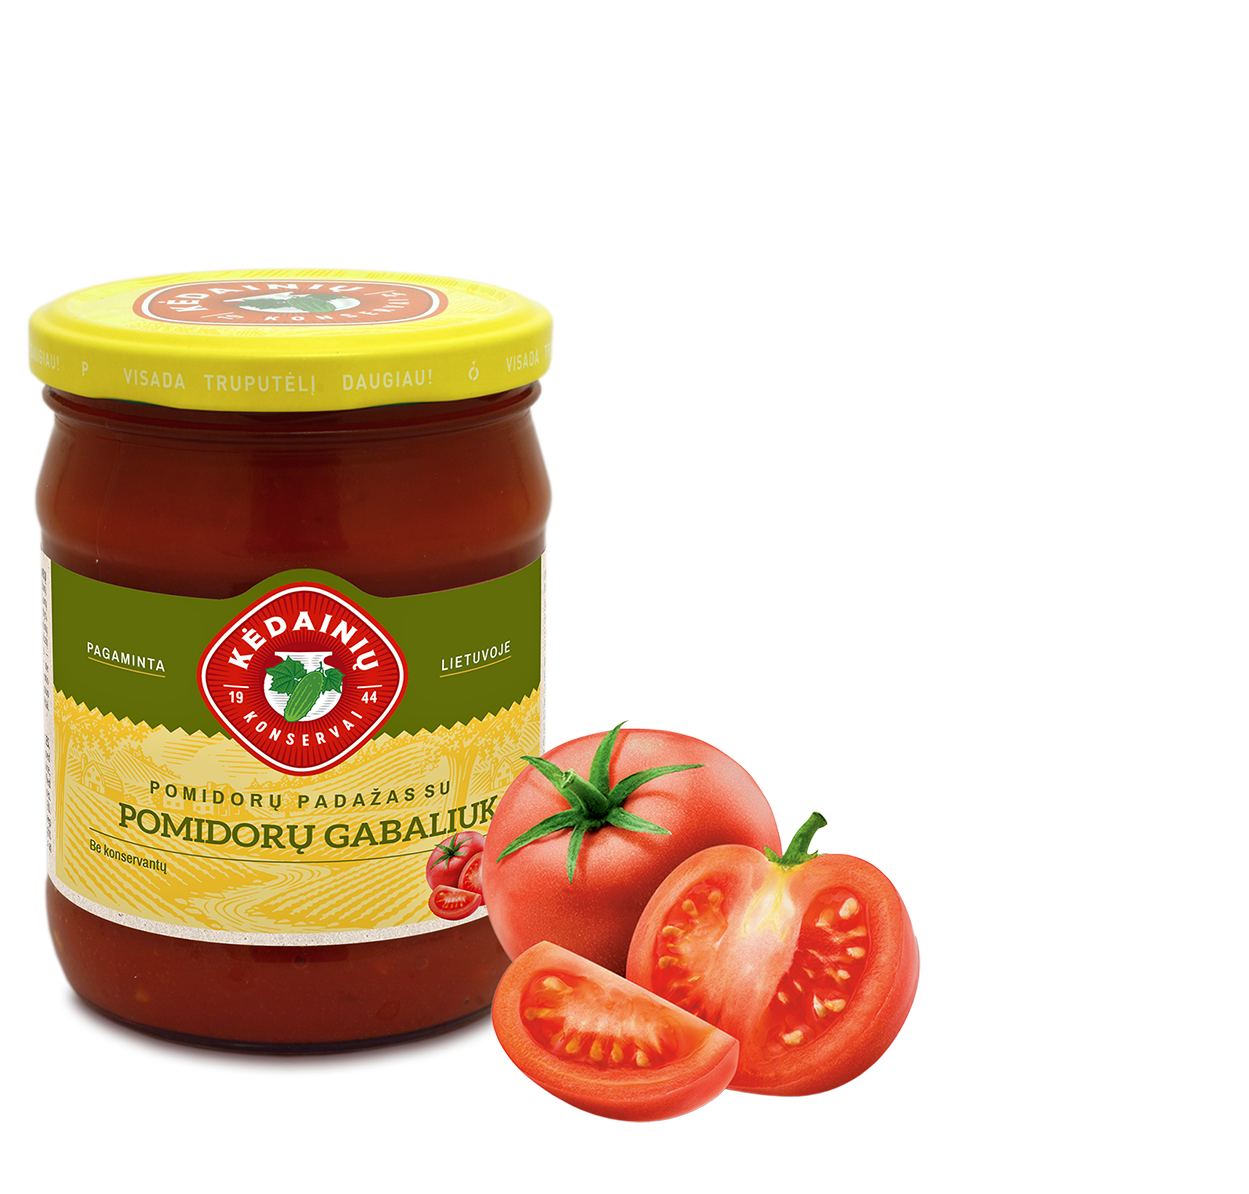 Tomato sauce with tomato pieces